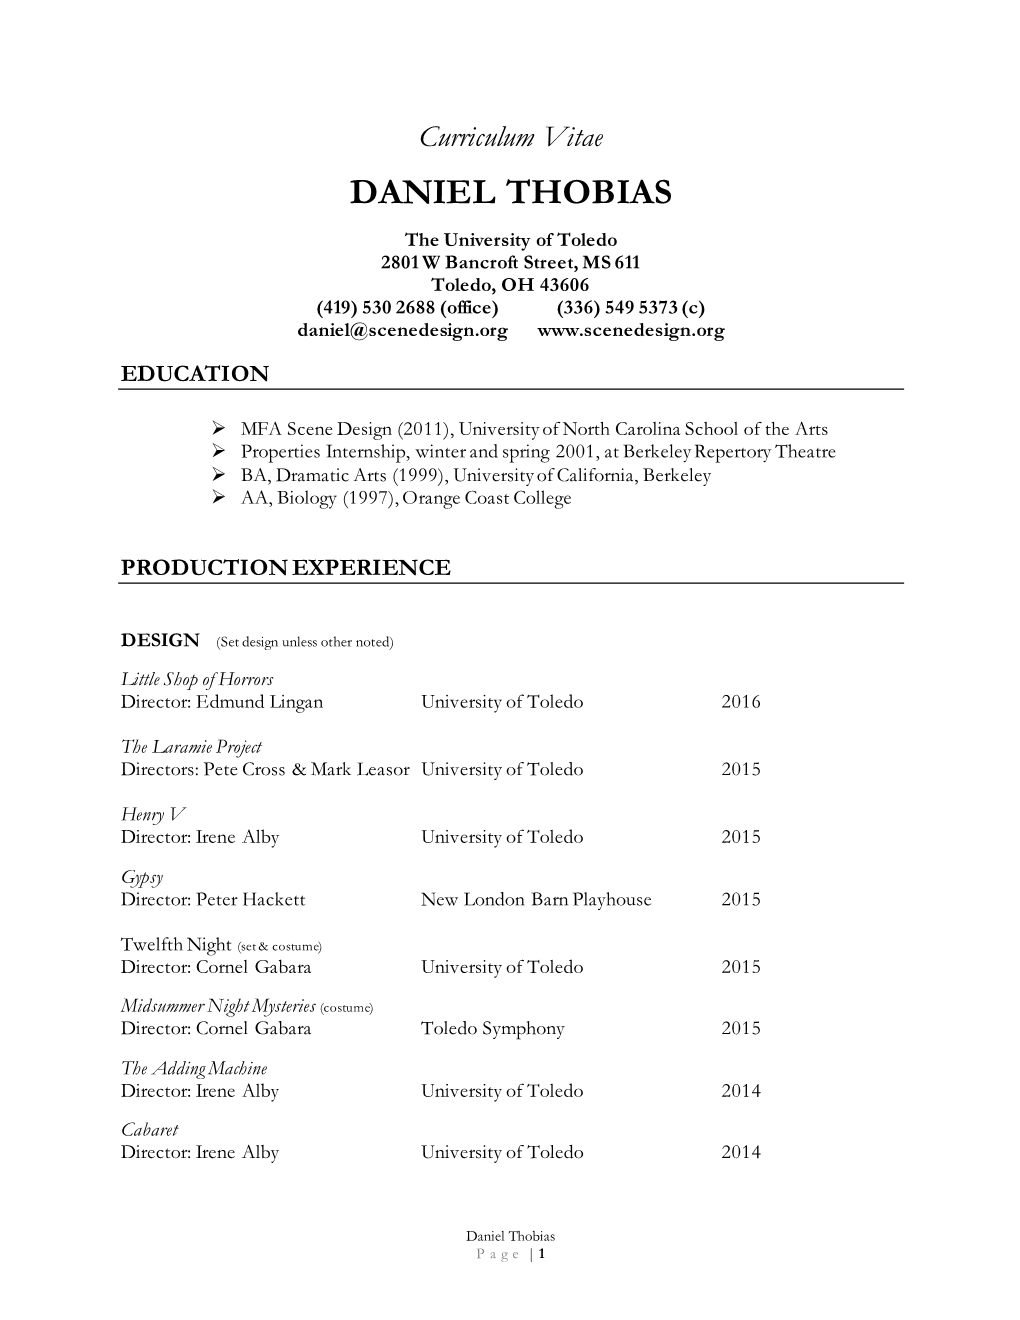 Daniel Thobias